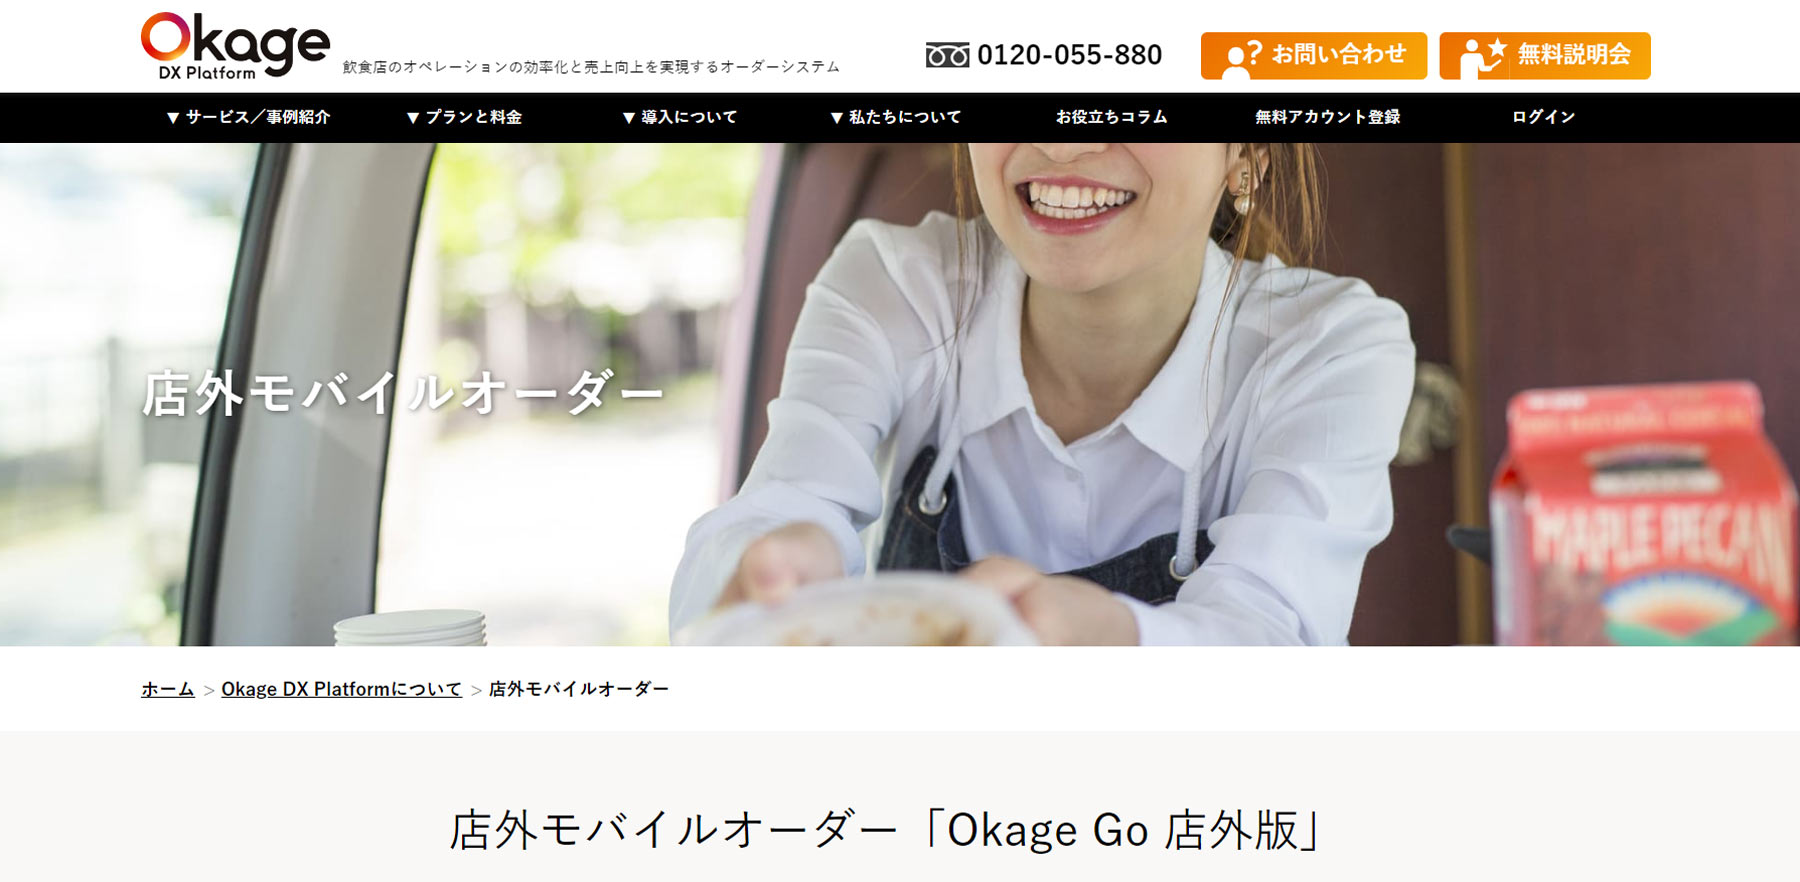 Okage Go 店外版公式Webサイト